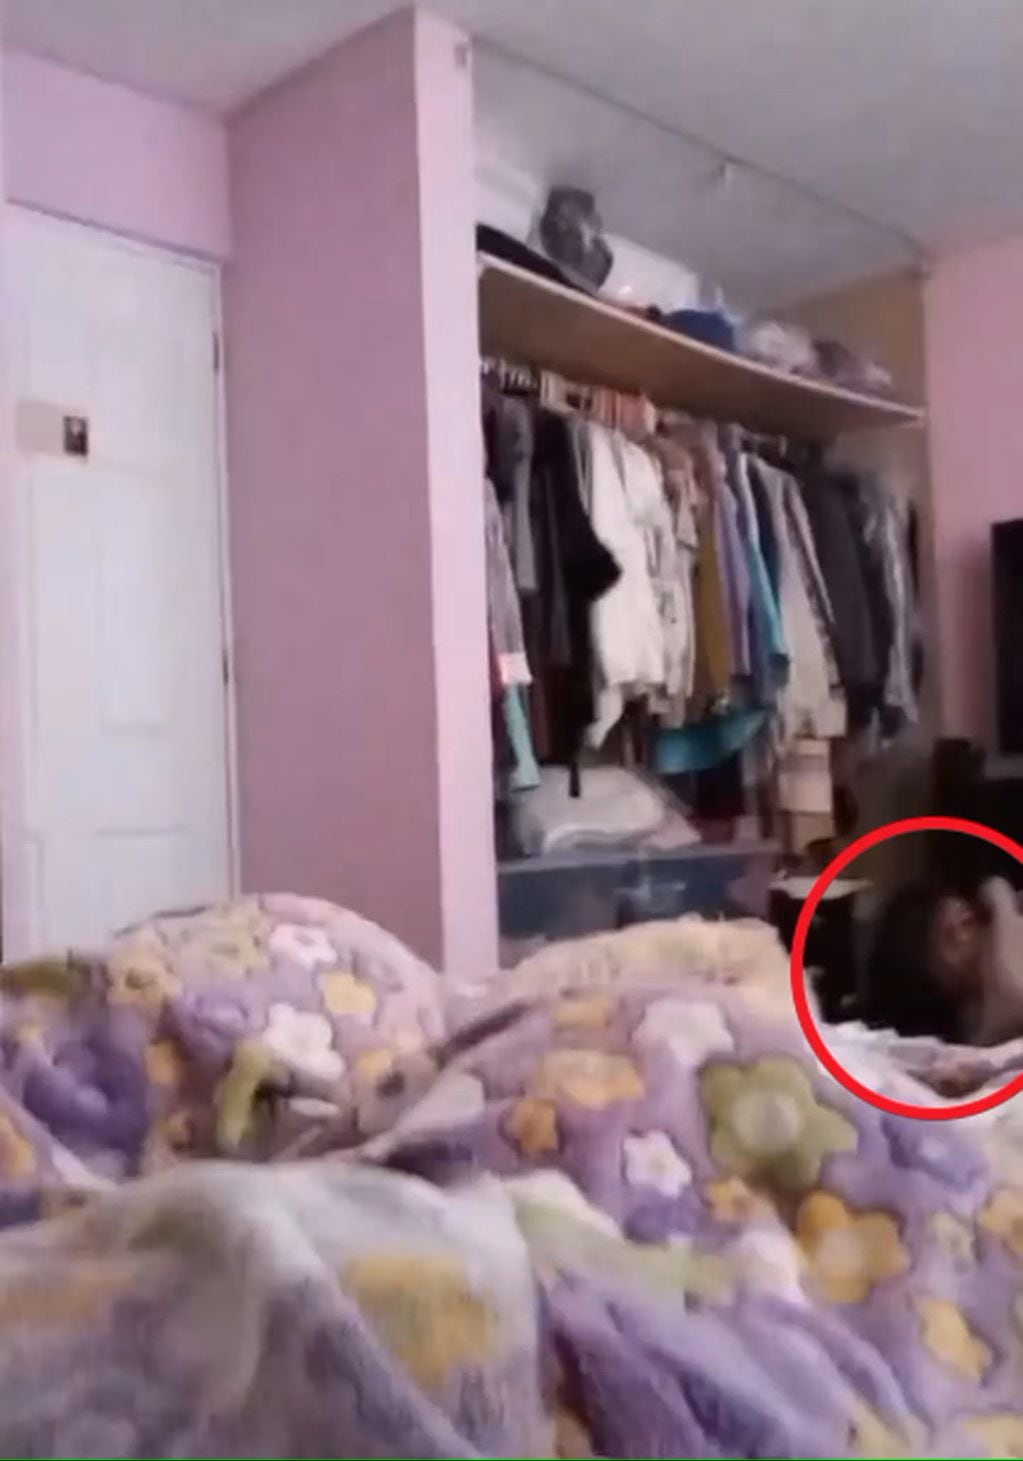 La extraña figura que estaba en su habitación mientras la joven estaba acostada con su hermana y su perra.